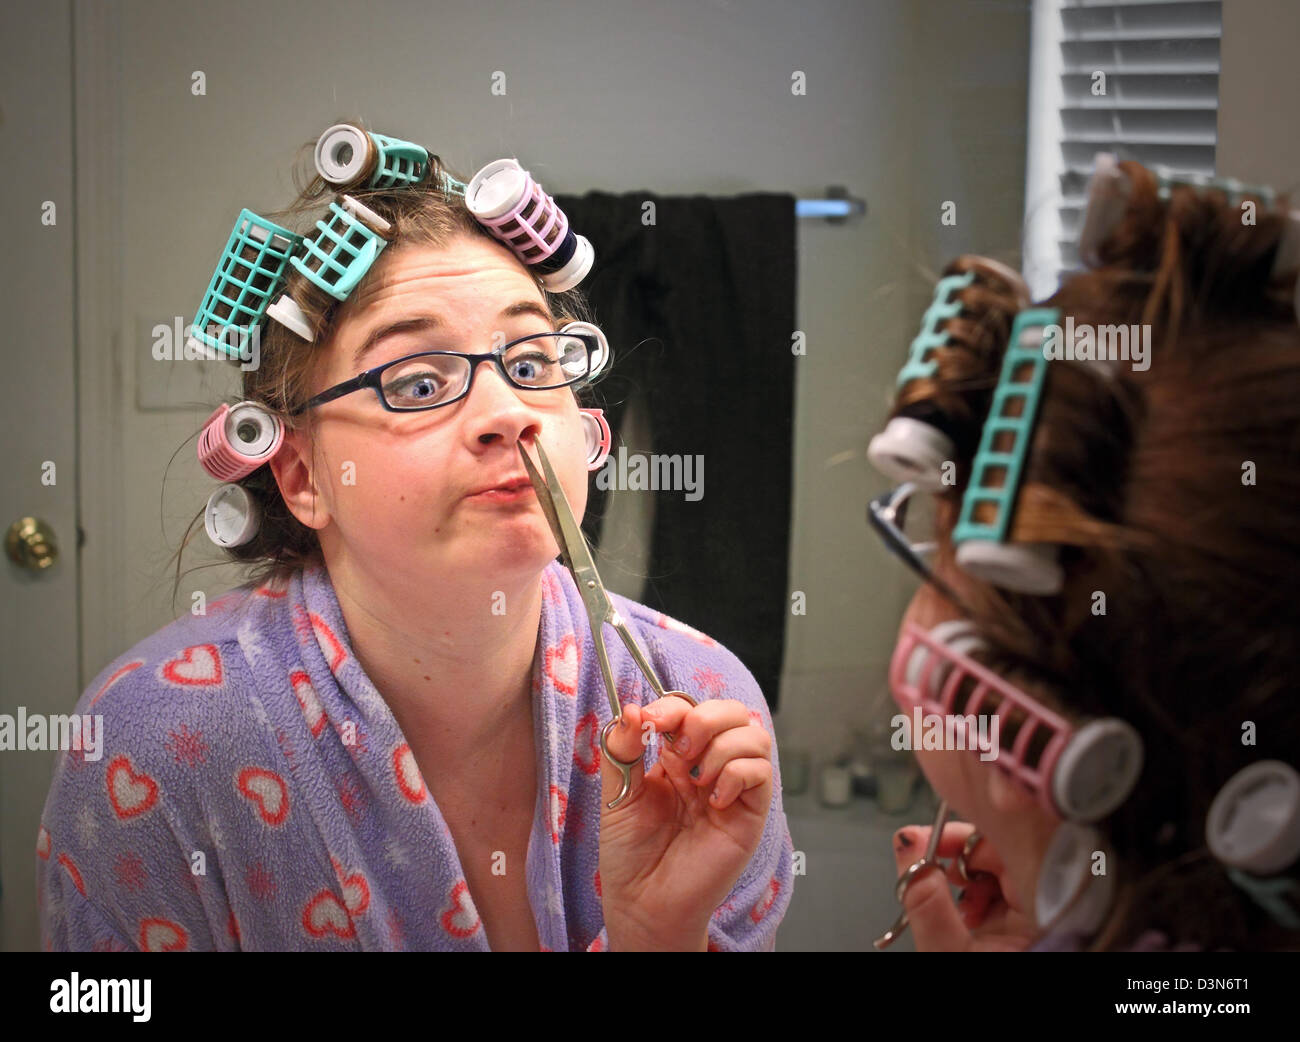 Una mujer joven con rulos y gafas hace una cara divertida al recortar su nariz pelos Foto de stock